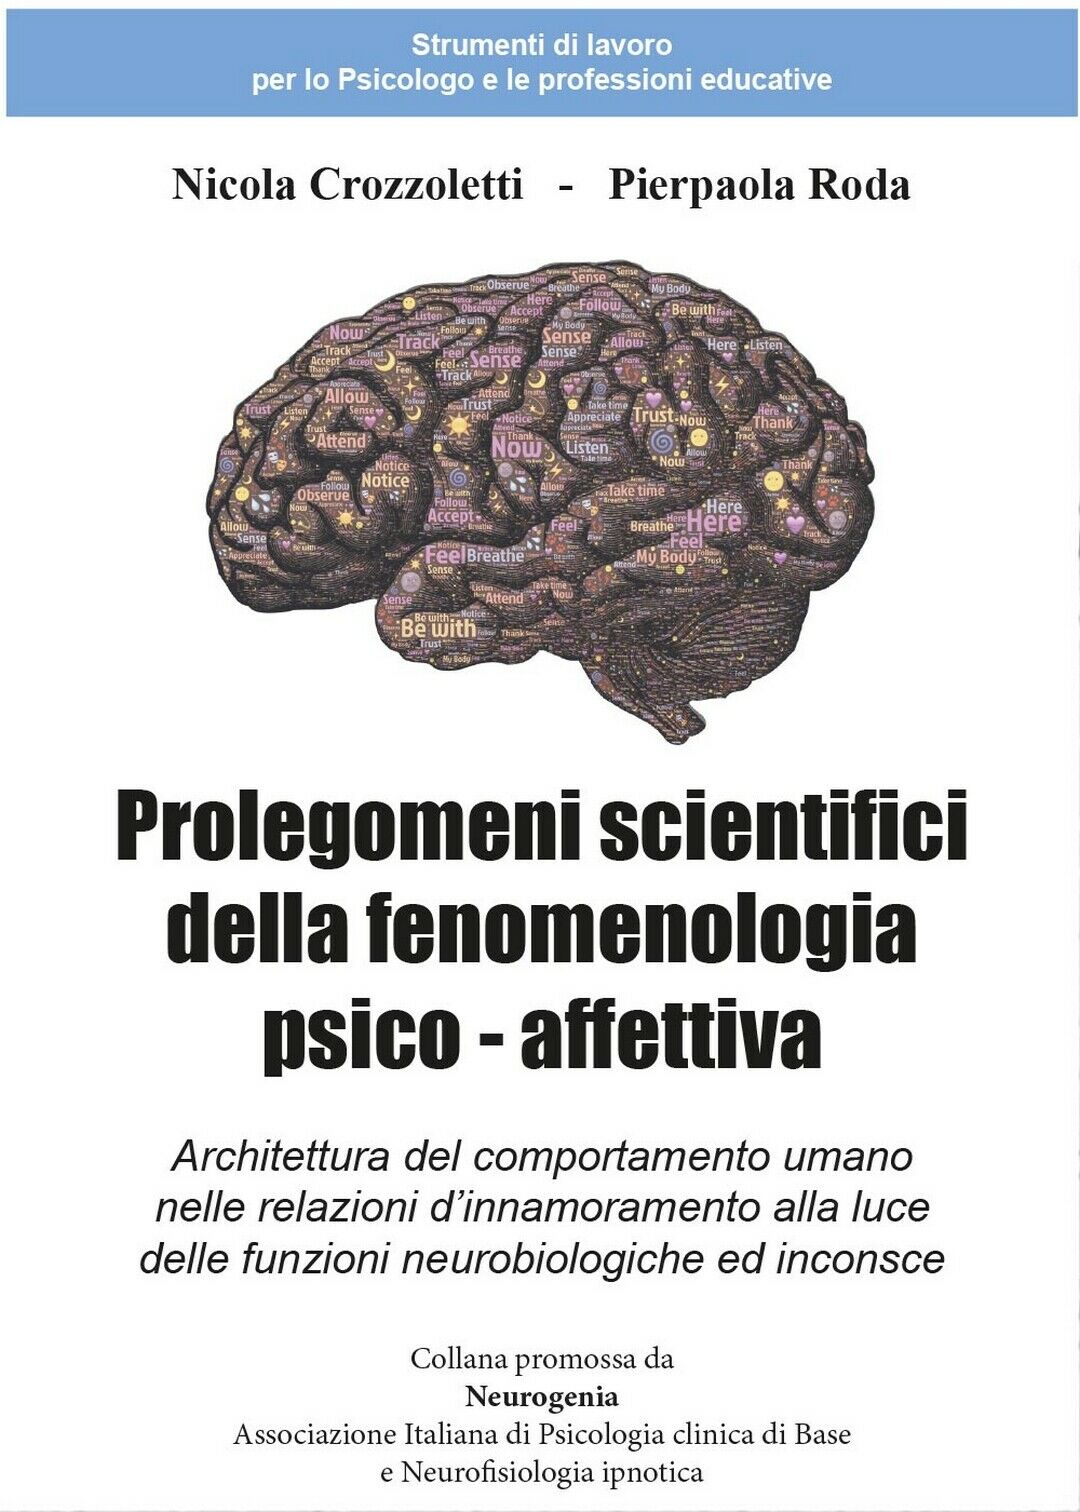 Prolegomeni scientifici della fenomenologia psico - affettiva, Nicola Crozzol.